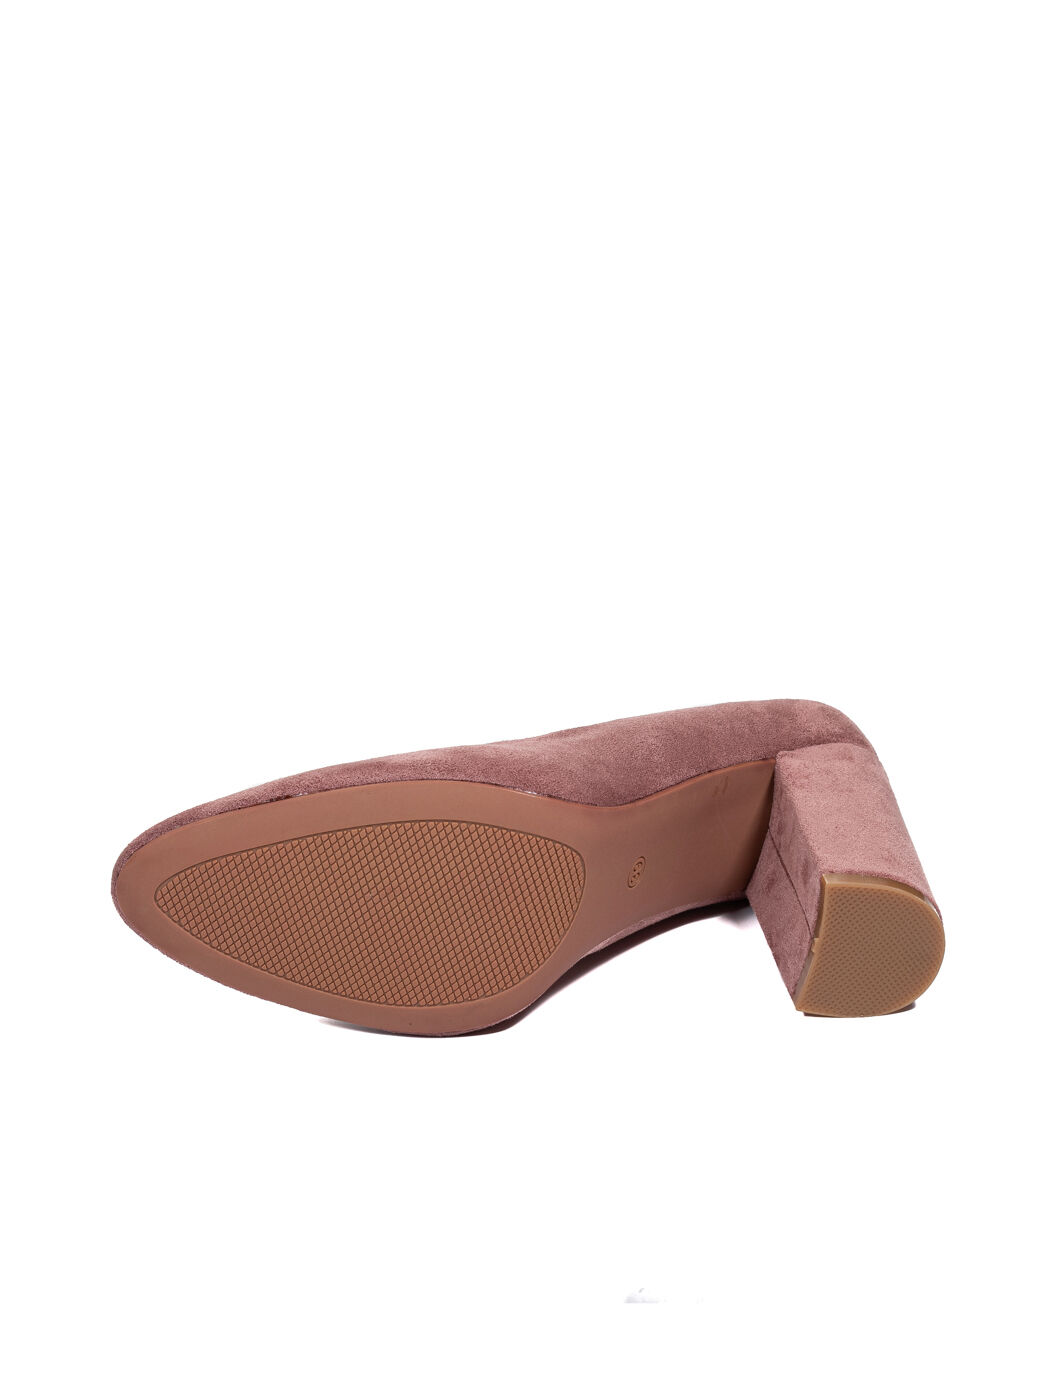 Туфли женские розовые экозамша каблук устойчивый демисезон DM вид 2